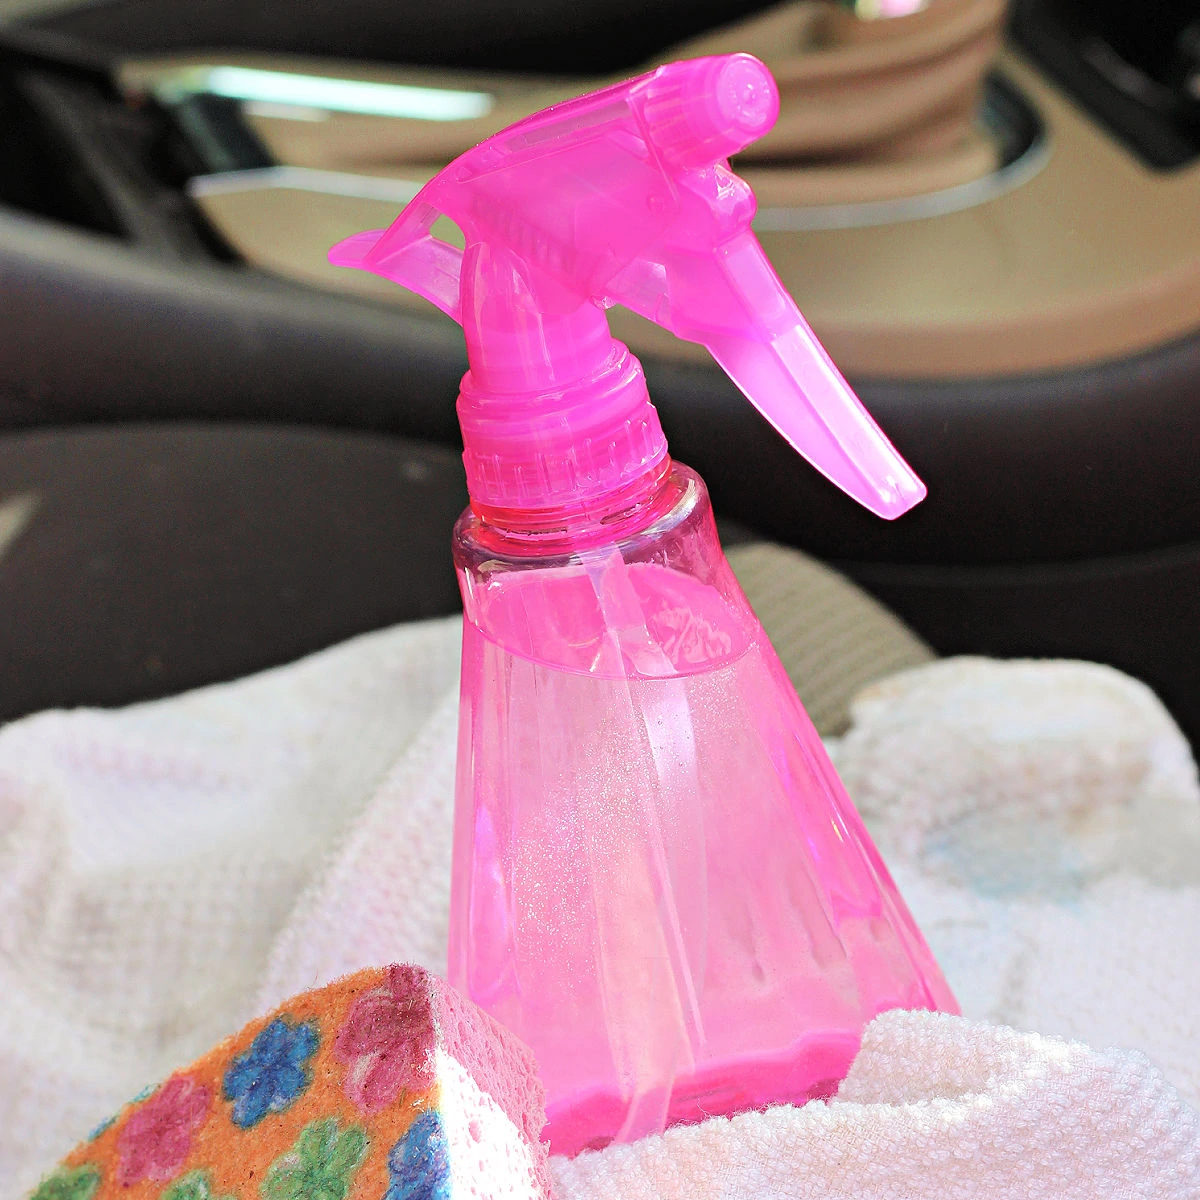 Pink spray bottle of homemade upholstery cleaner